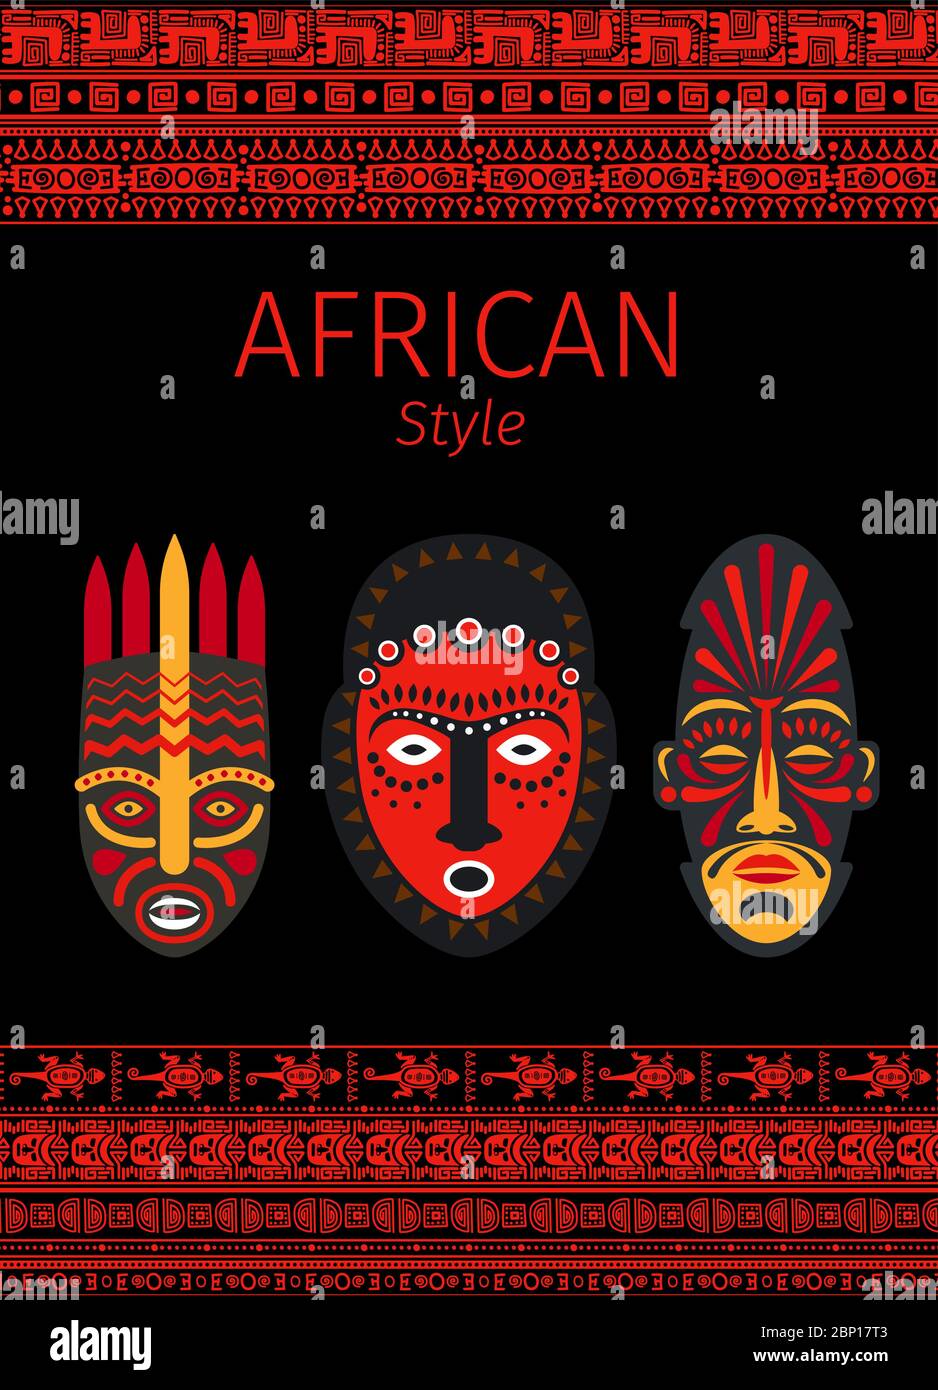 Motif vectoriel de style africain avec bordures rouges et symbole de masque Illustration de Vecteur